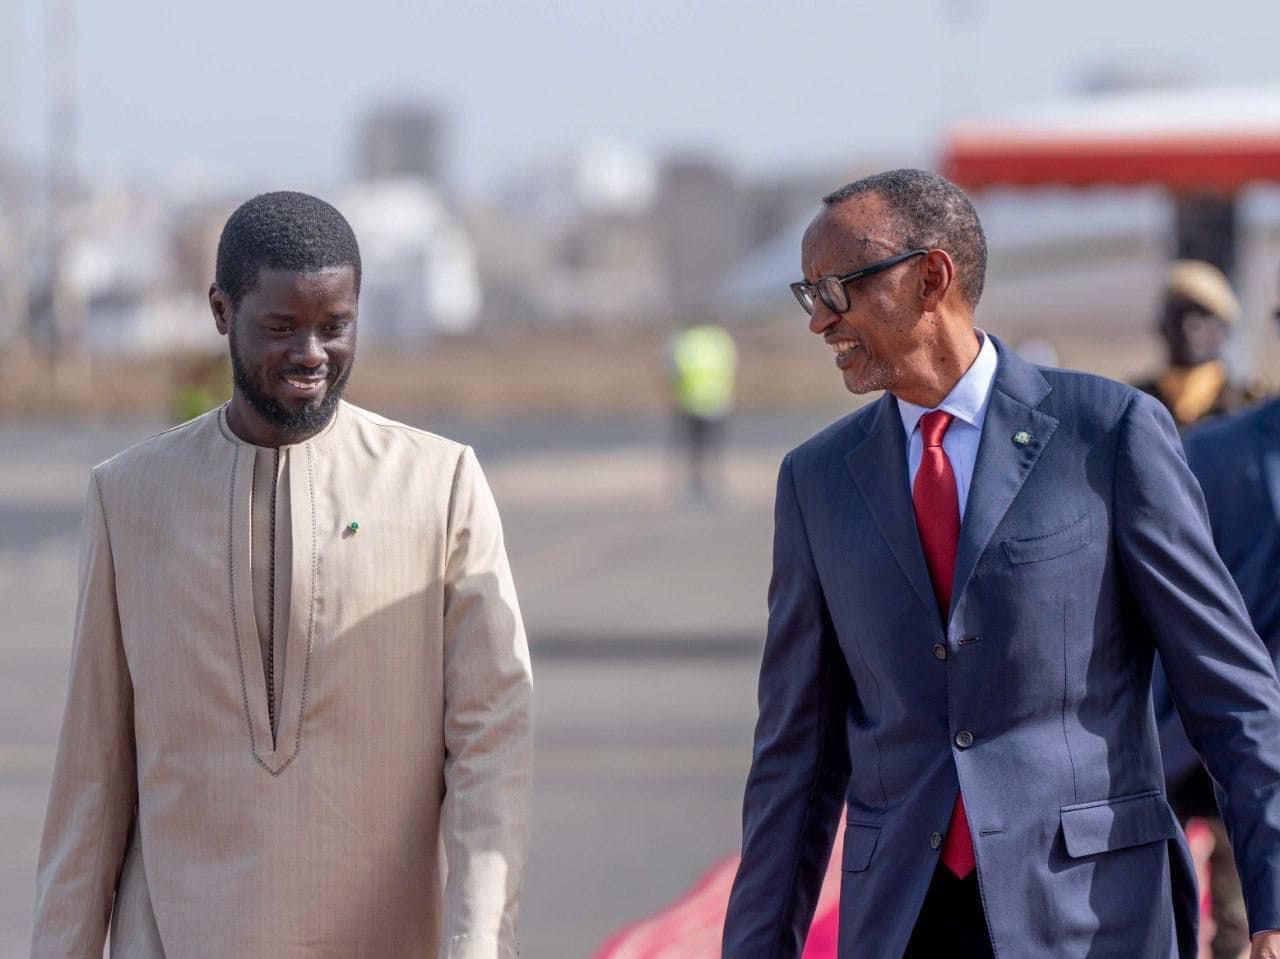 Arrivée de Paul Kagame à Dakar pour une visite officielle